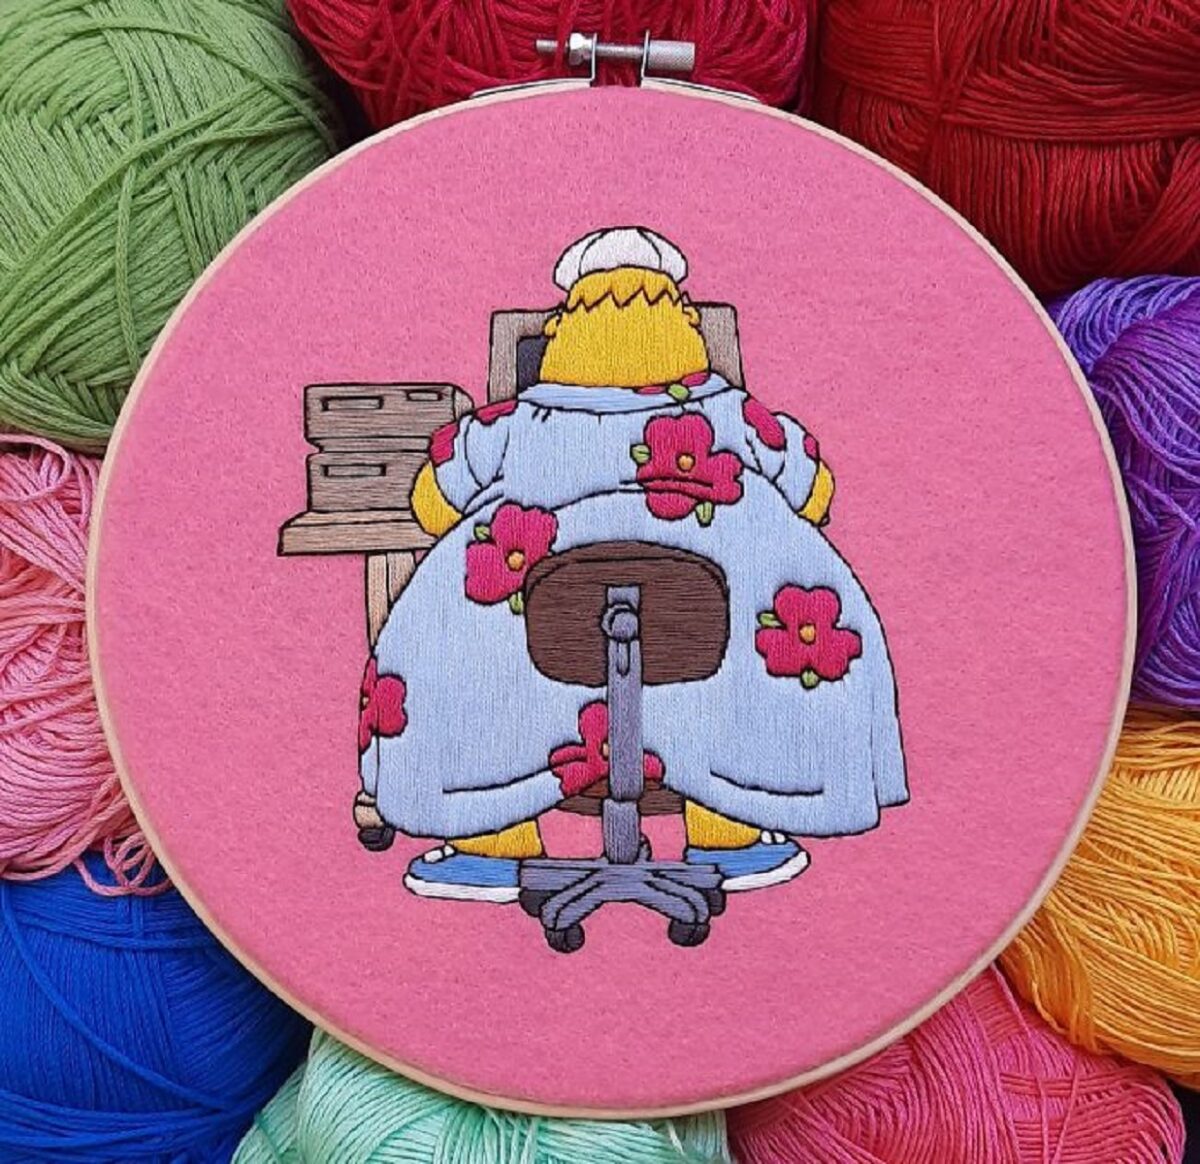 Artista Gabriela Martinez cria bordados de cenas de Os Simpsons 23